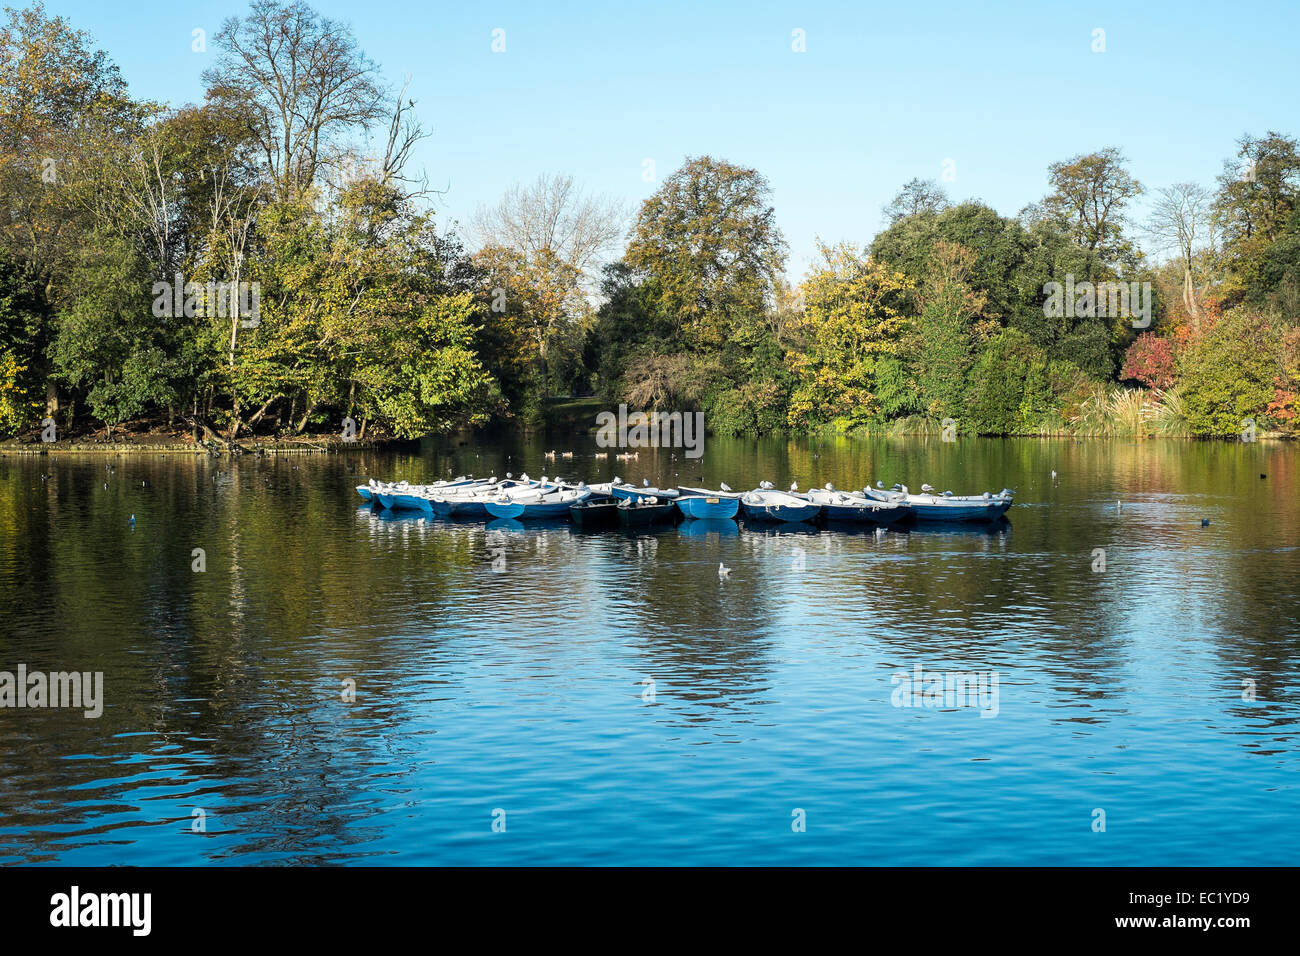 Piuttosto scenic in barca sul lago del parco di stagno barche London Victoria Park Hackney Foto Stock